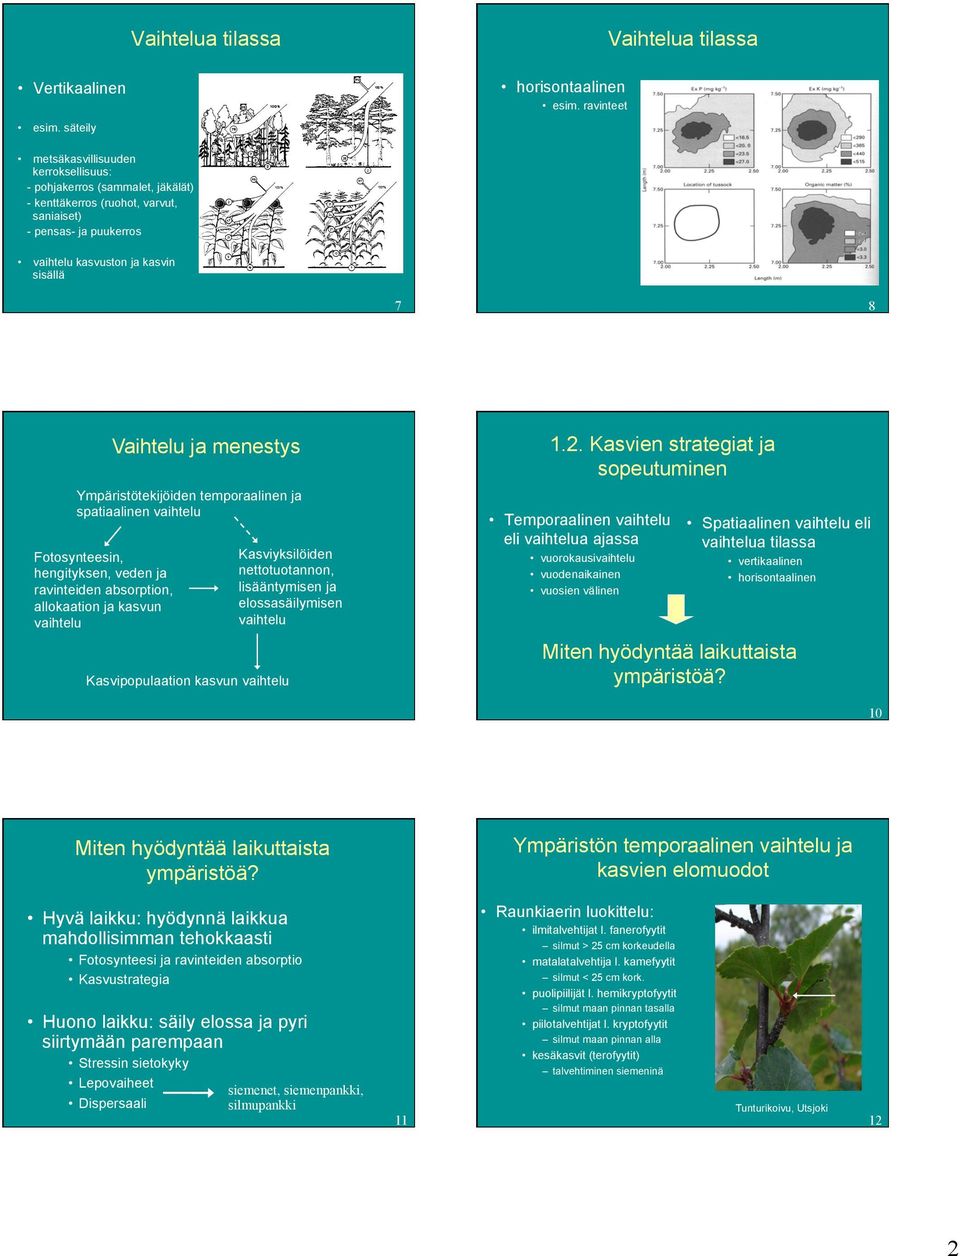 Kasvien strategiat ja Vaihtelu ja menestys tekijöiden temporaalinen ja spatiaalinen vaihtelu Fotosynteesin, hengityksen, veden ja ravinteiden absorption, allokaation ja kasvun vaihtelu 8